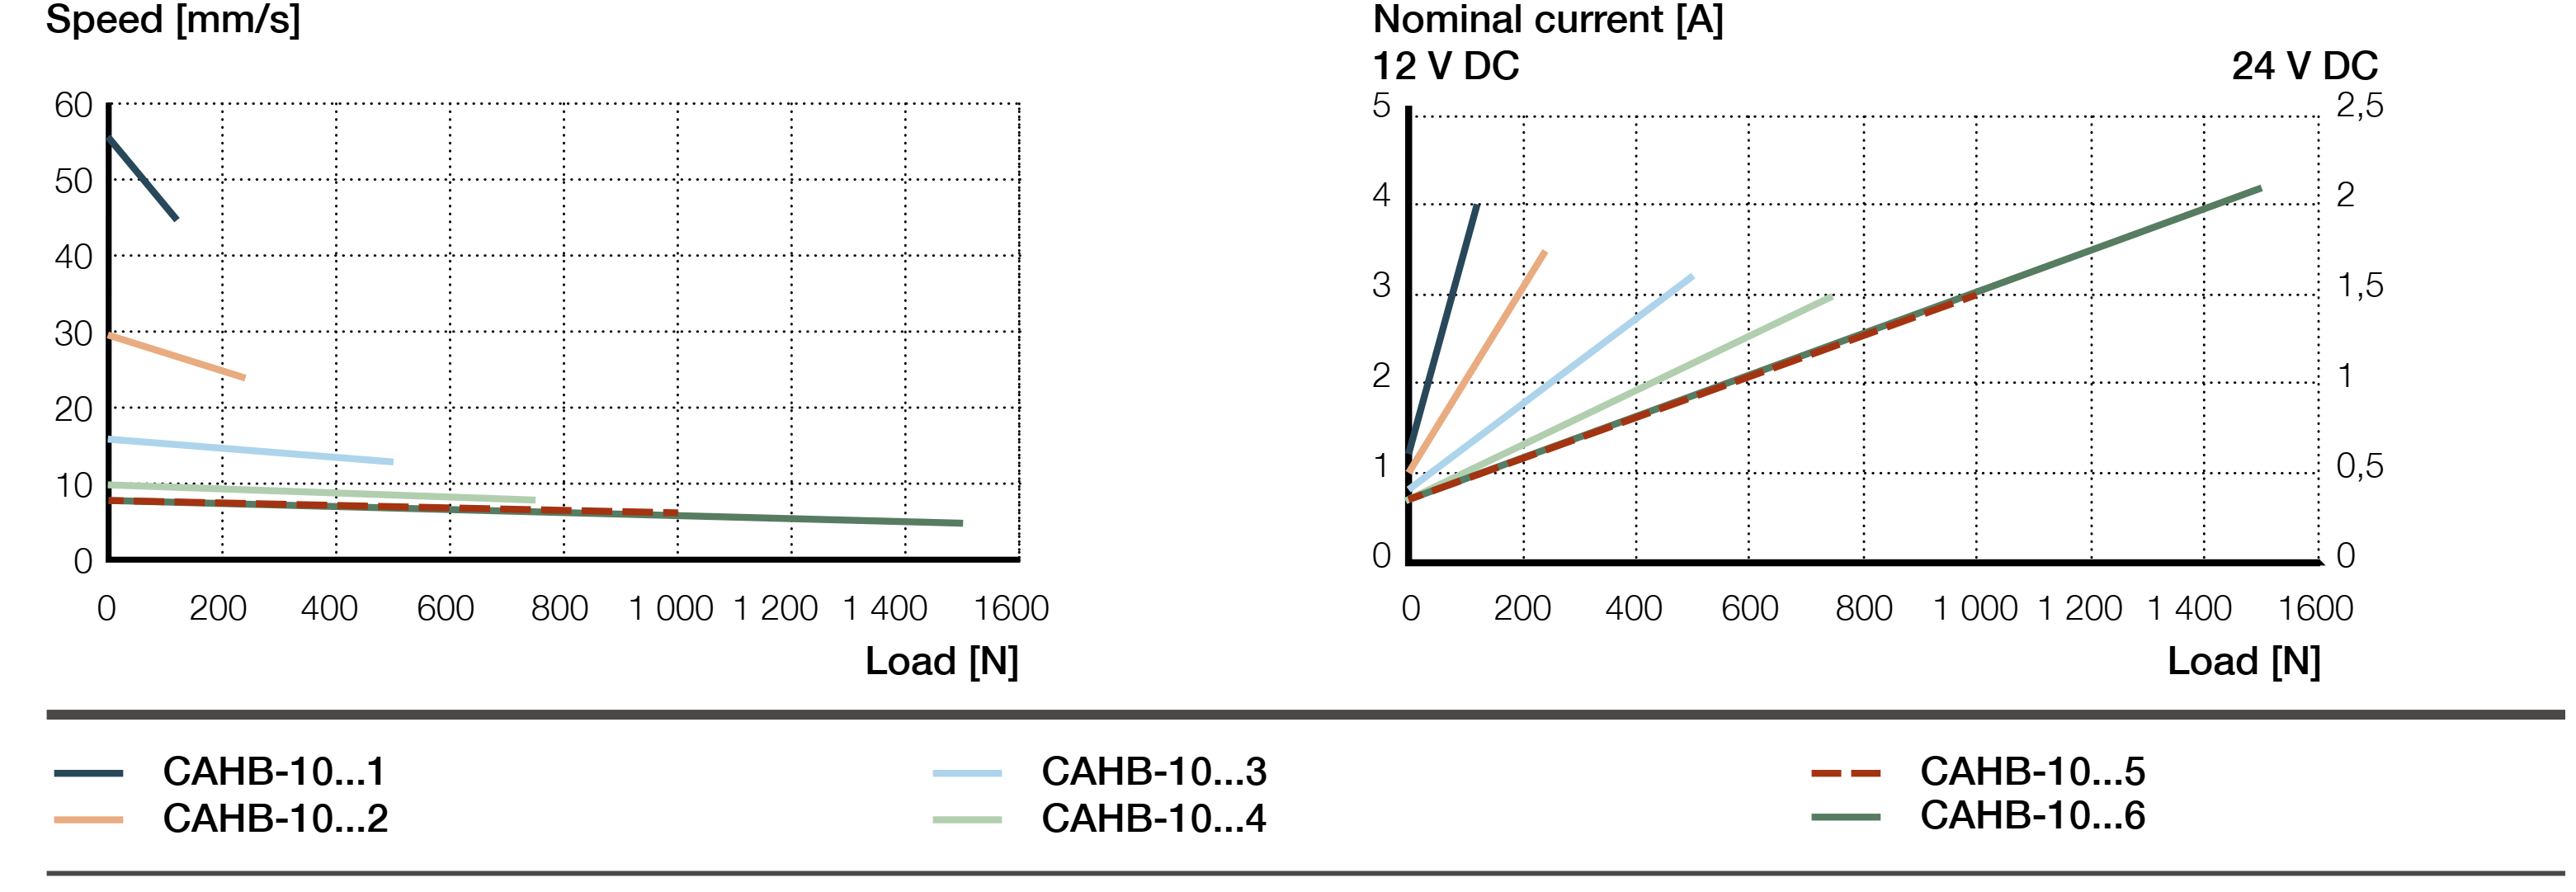 Biểu đồ hiệu suất Xi lanh điện CAHB-10